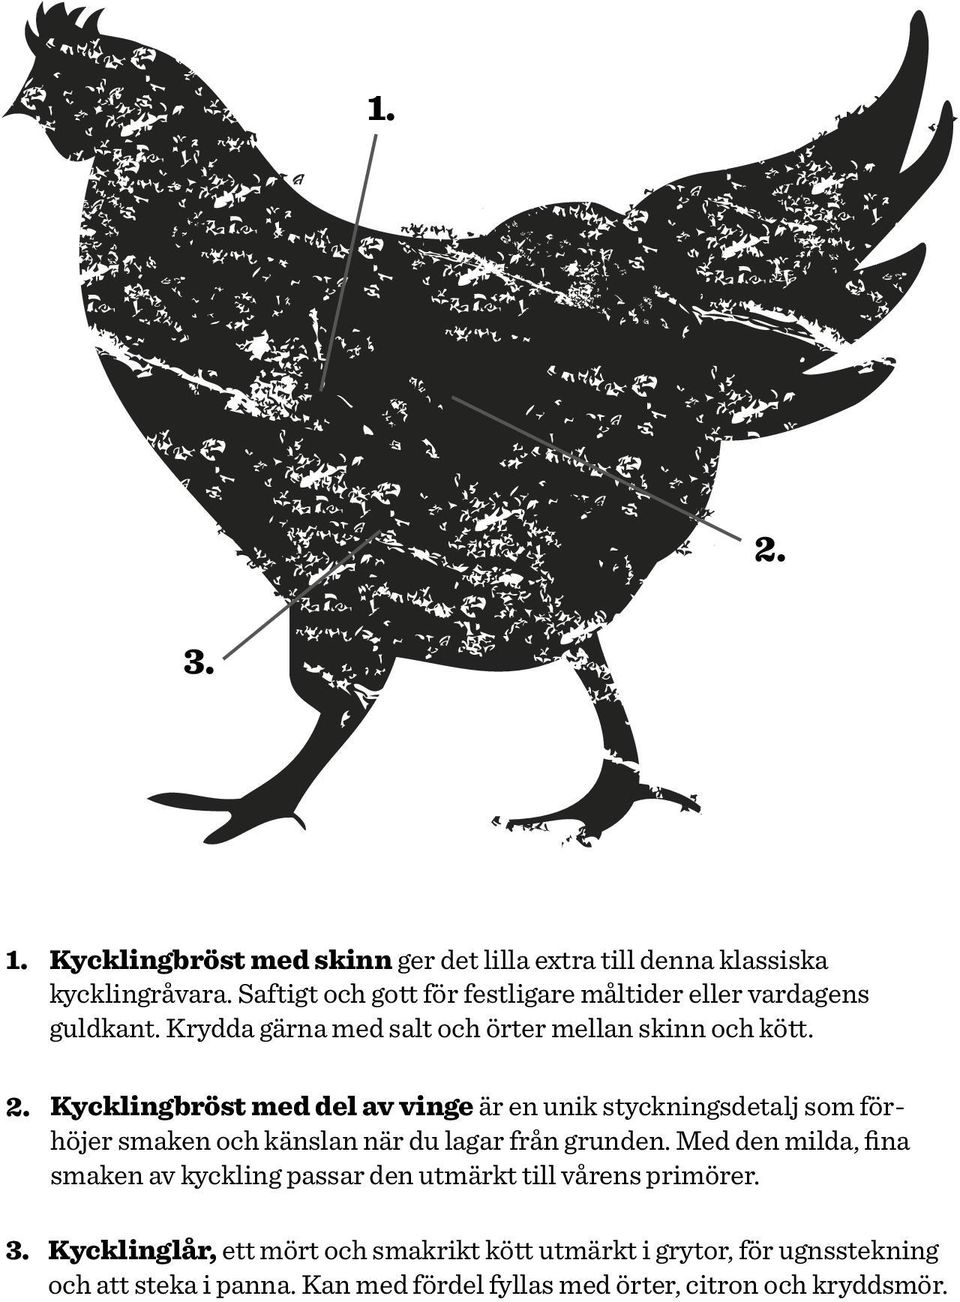 Kycklingbröst med del av vinge är en unik styckningsdetalj som förhöjer smaken och känslan när du lagar från grunden.